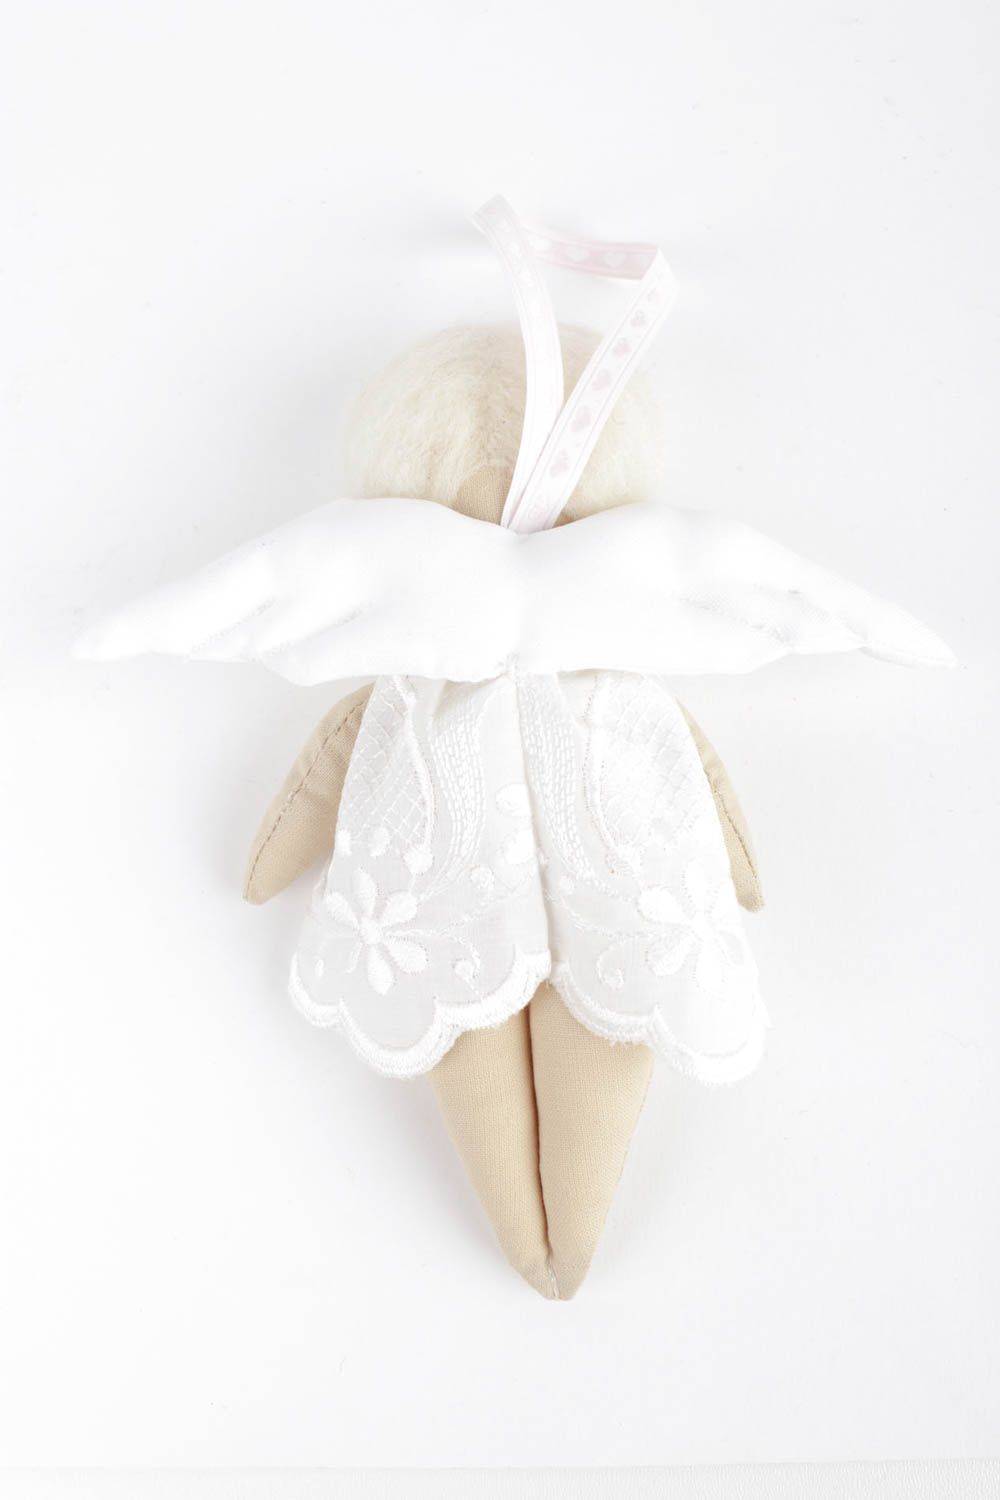 Puppe handgemacht Kuscheltier Engel Designer Puppe Stoff Spielzeug zart schön foto 4